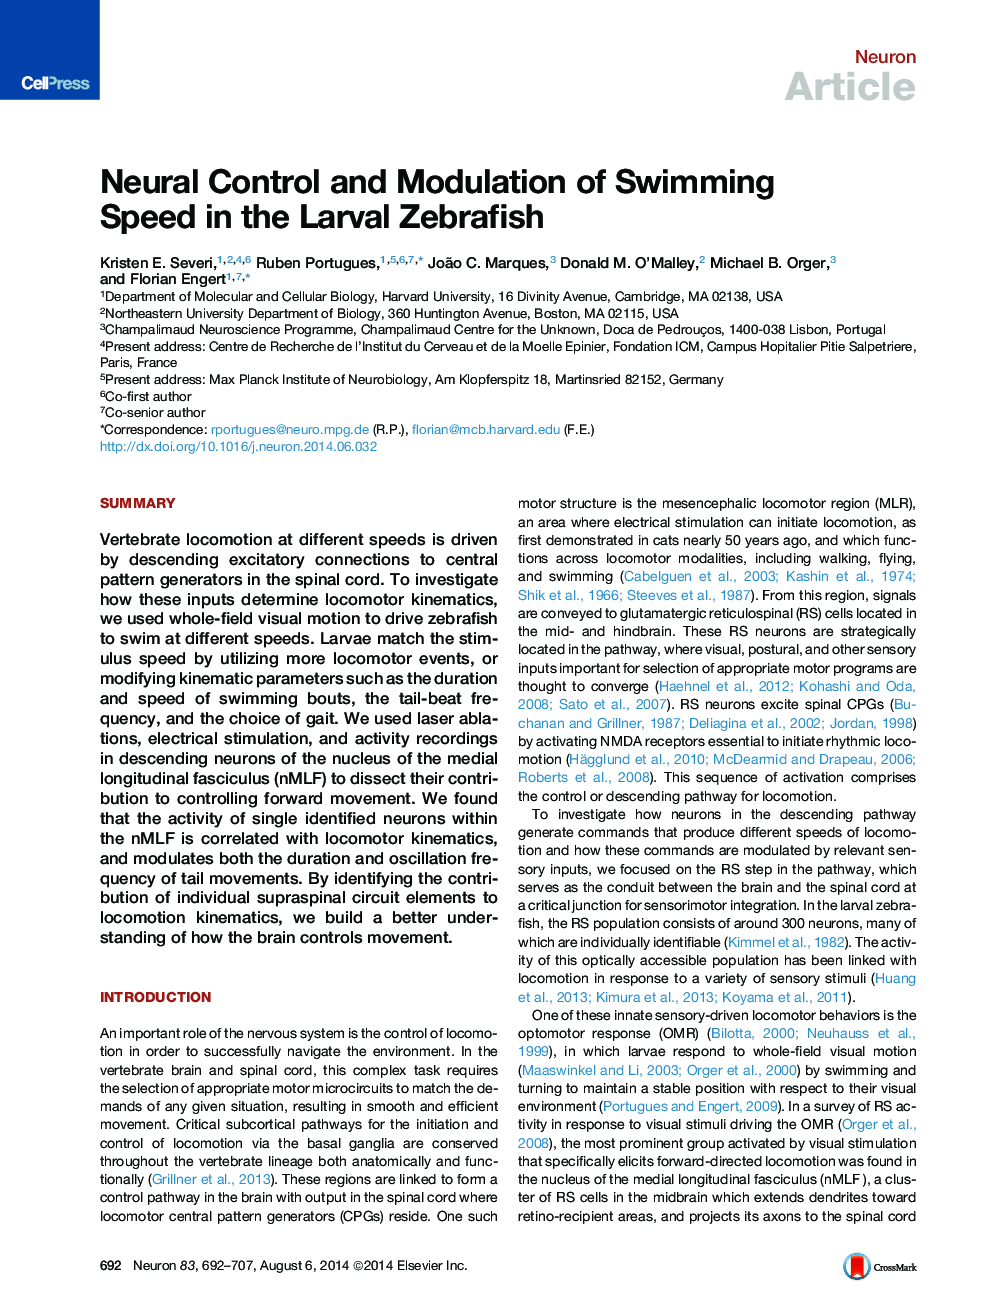 کنترل عصبی و مدولاسیون سرعت شنا در ماهی قزل آلا لارو 